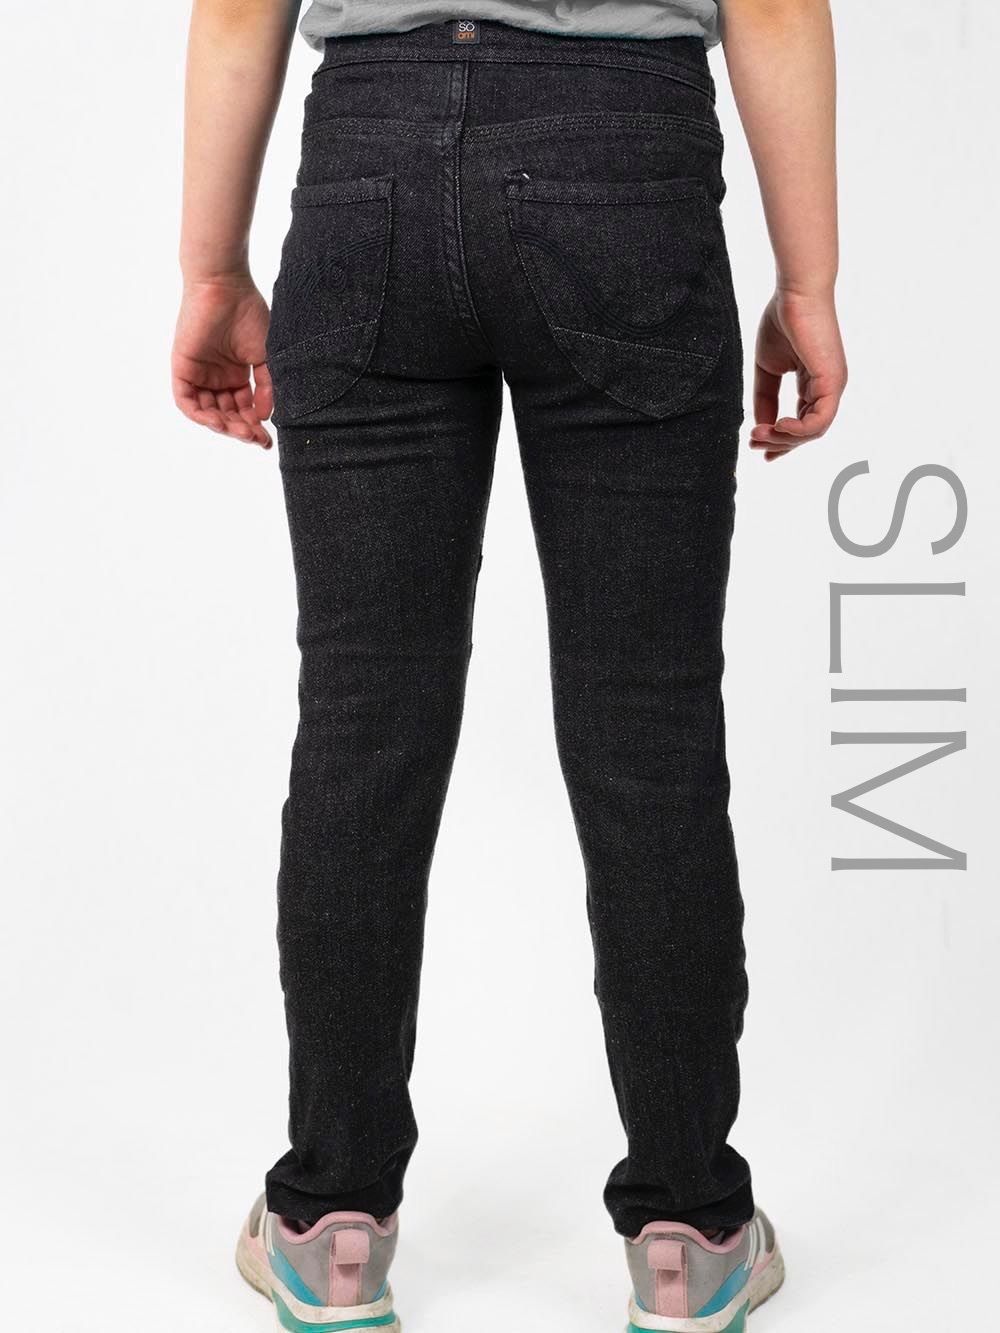 Ossoami Cara jeans från Gneis